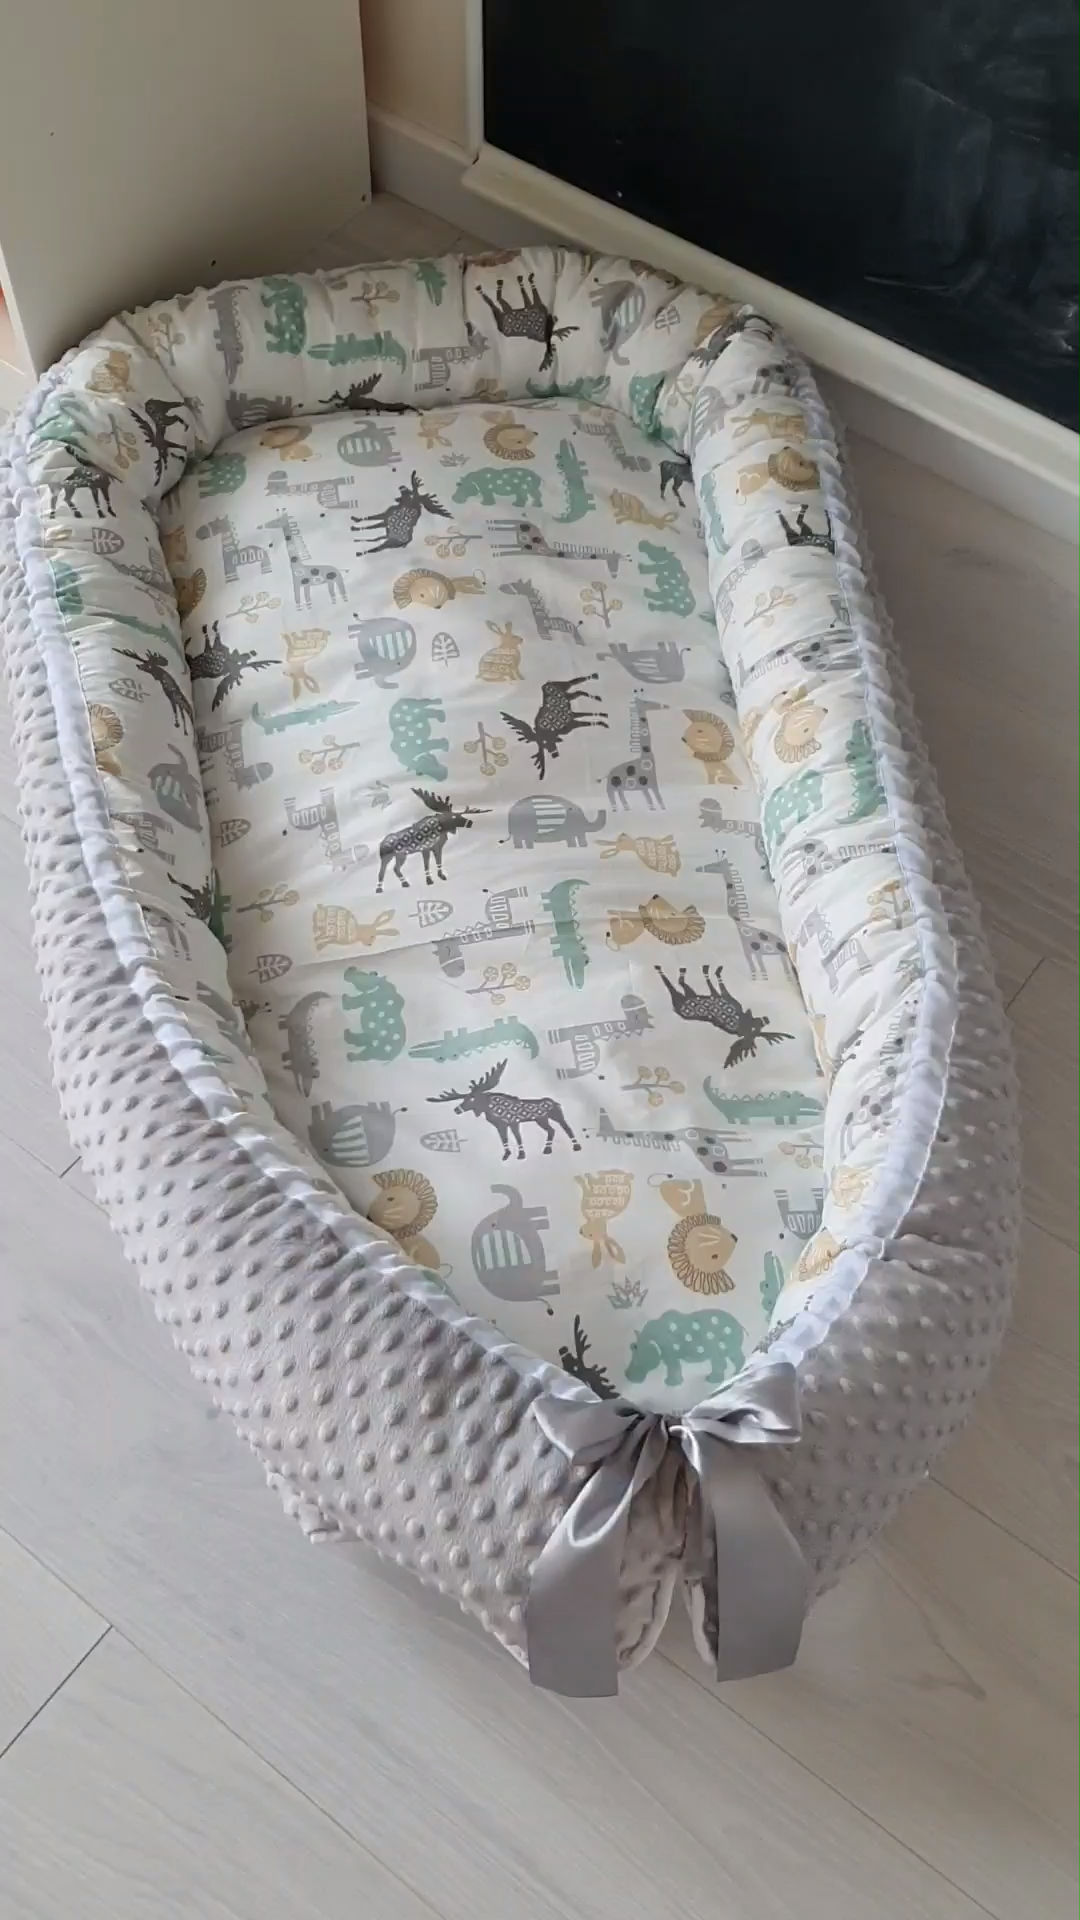 16 diy Baby bed ideas